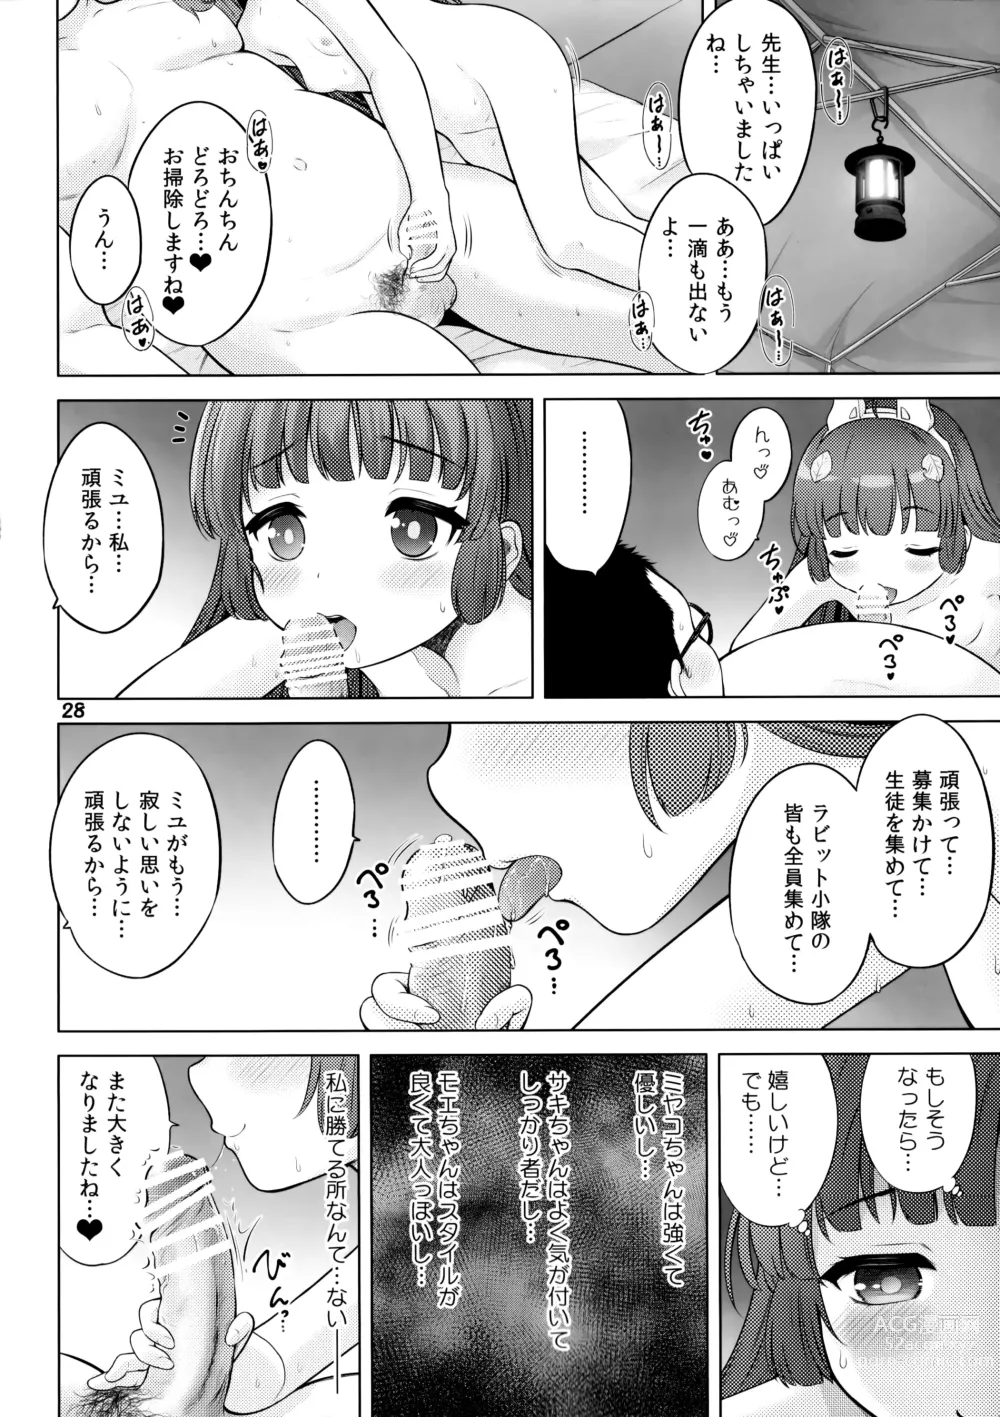 Page 27 of doujinshi Kyouizon no Usagi - Codependency Rabbit